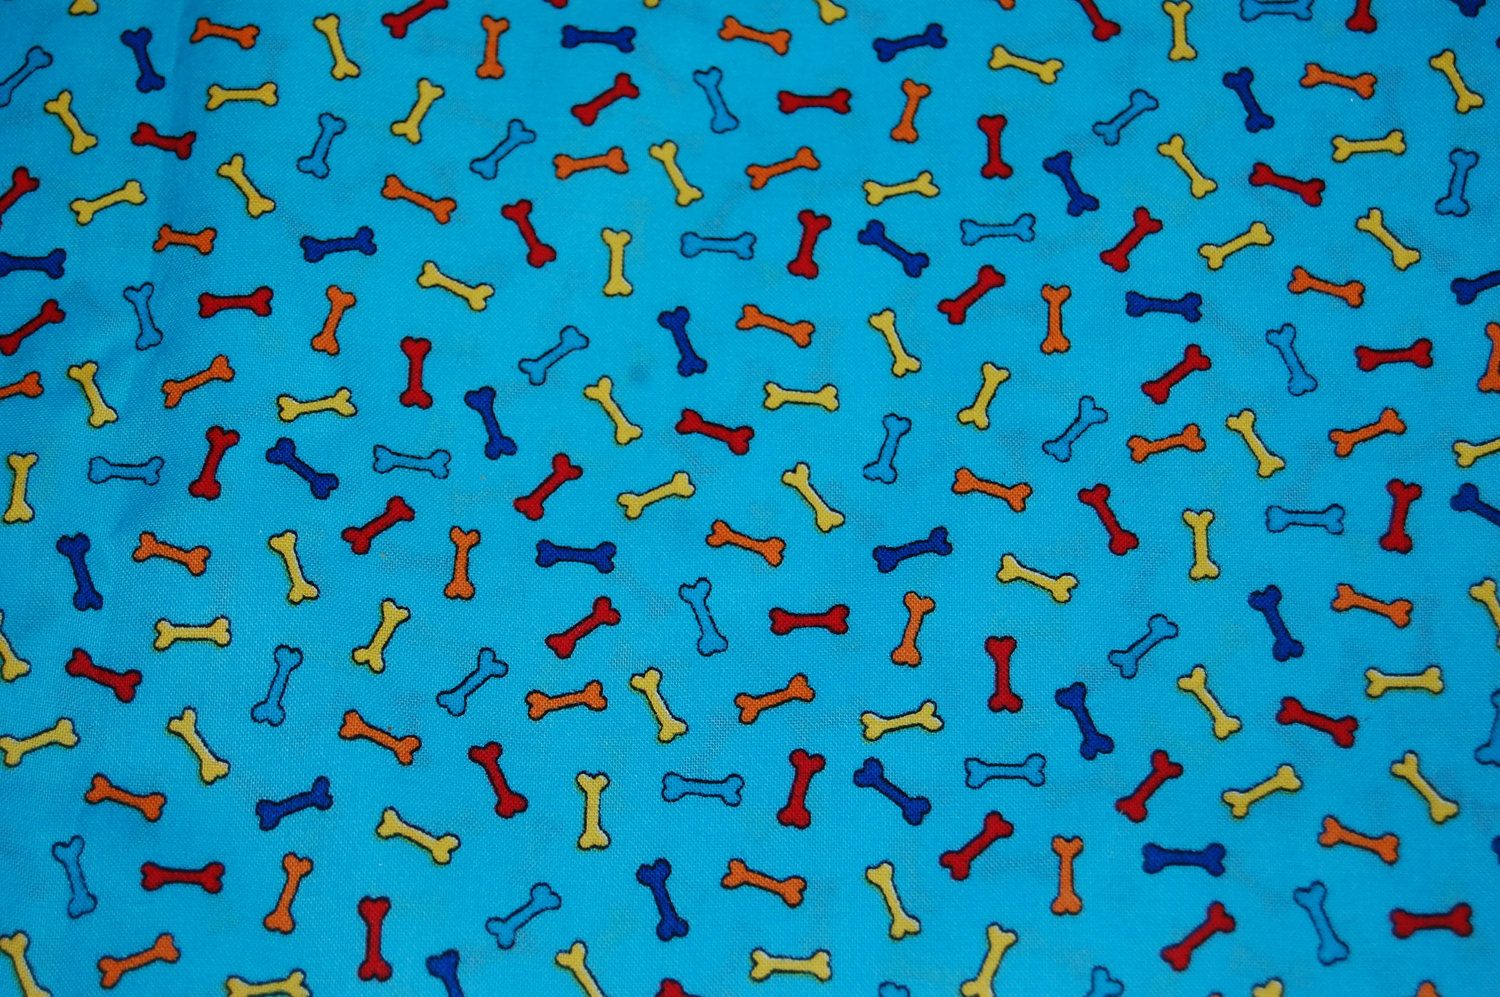 Rainbow Dog Bone Blue Fabric by CraftyIrishman on Etsy